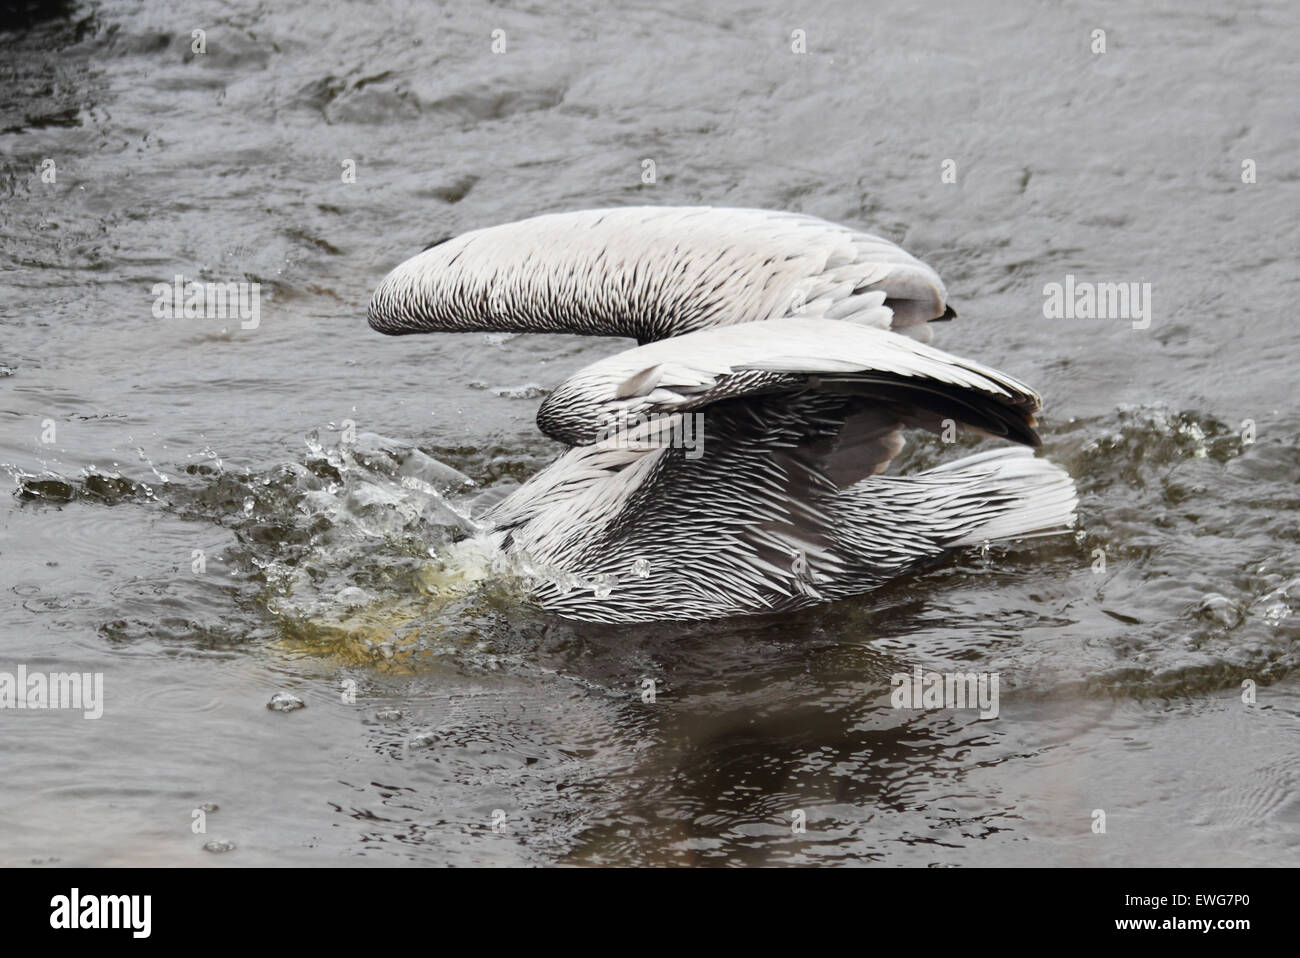 Un pellicano bruno schizzi attraverso l'acqua di alimentazione in un estuario costiere. Foto Stock